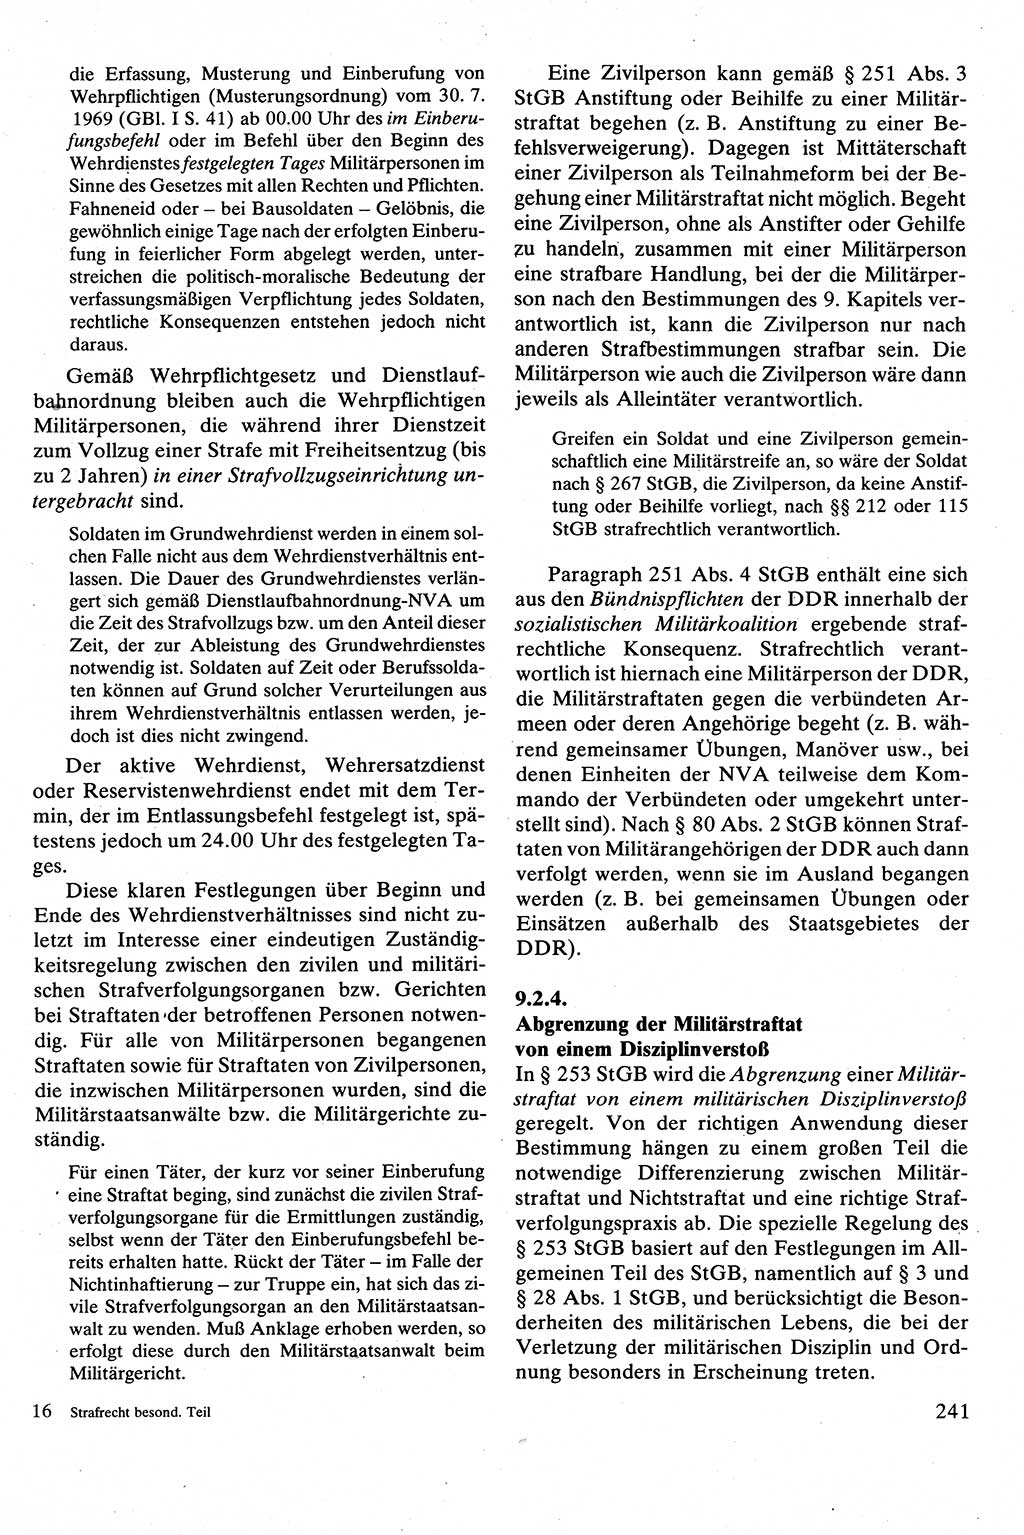 Strafrecht [Deutsche Demokratische Republik (DDR)], Besonderer Teil, Lehrbuch 1981, Seite 241 (Strafr. DDR BT Lb. 1981, S. 241)